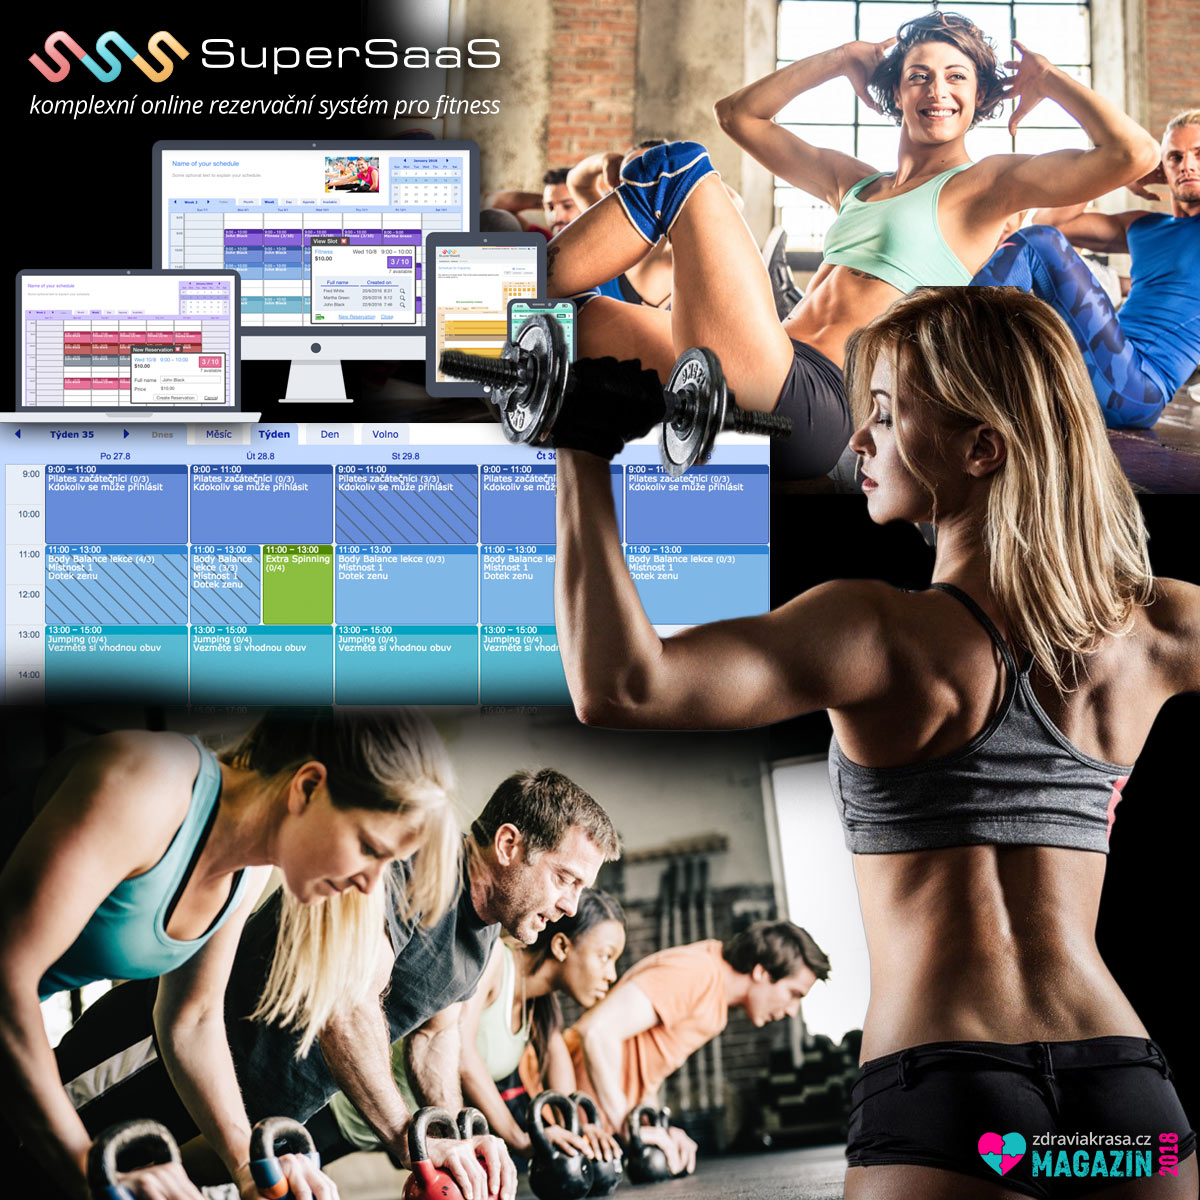 SuperSaaS je ideální rezervační systém pro fitness centra. 